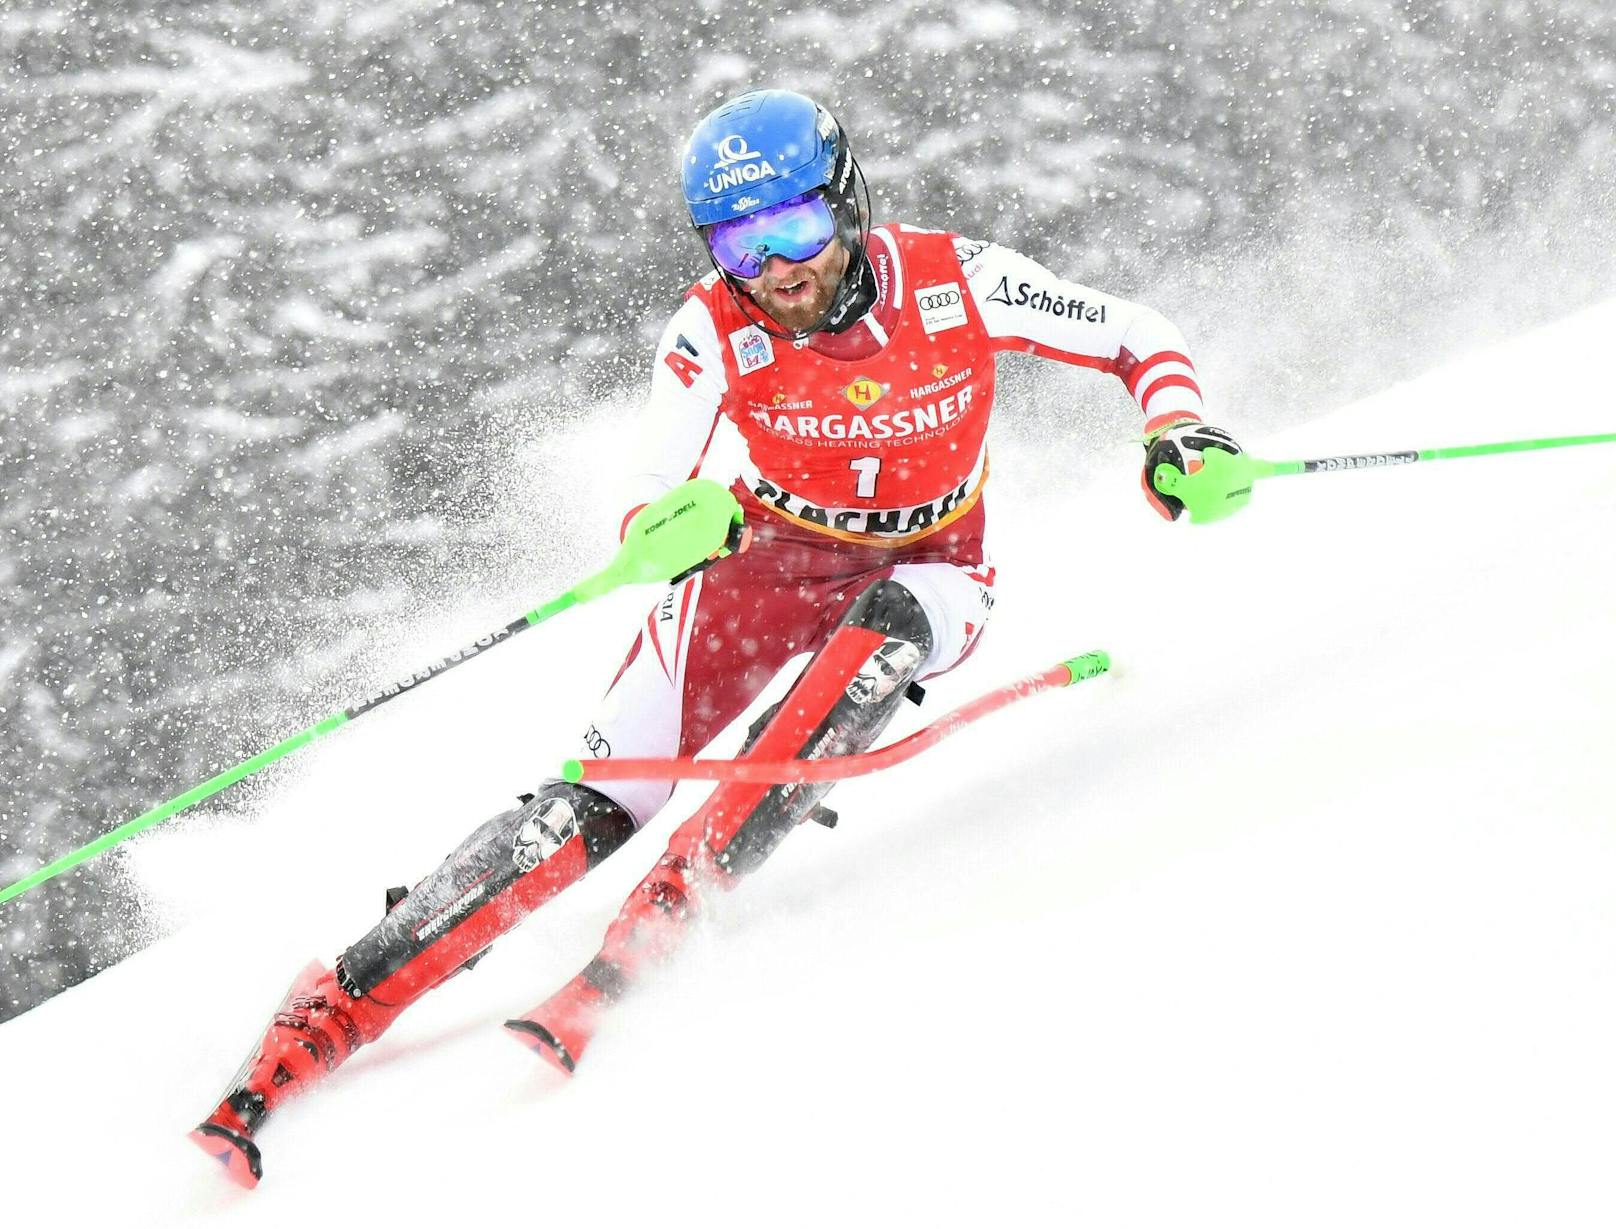 ÖSV-Star Marco Schwarz belegte im zweiten Flachau-Slalom hinter Premierensieger Sebastian Foss-Solevaag (Norwegen) als bester Österreicher den zweiten Platz. Fabio Gstrein fiel von Zwischenrang zwei auf Platz fünf zurück – bestes Ergebnis für ihn. Manuel Feller machte als Zwischendritter einen großen Fehler und wurde in der Entscheidung durchgereicht.